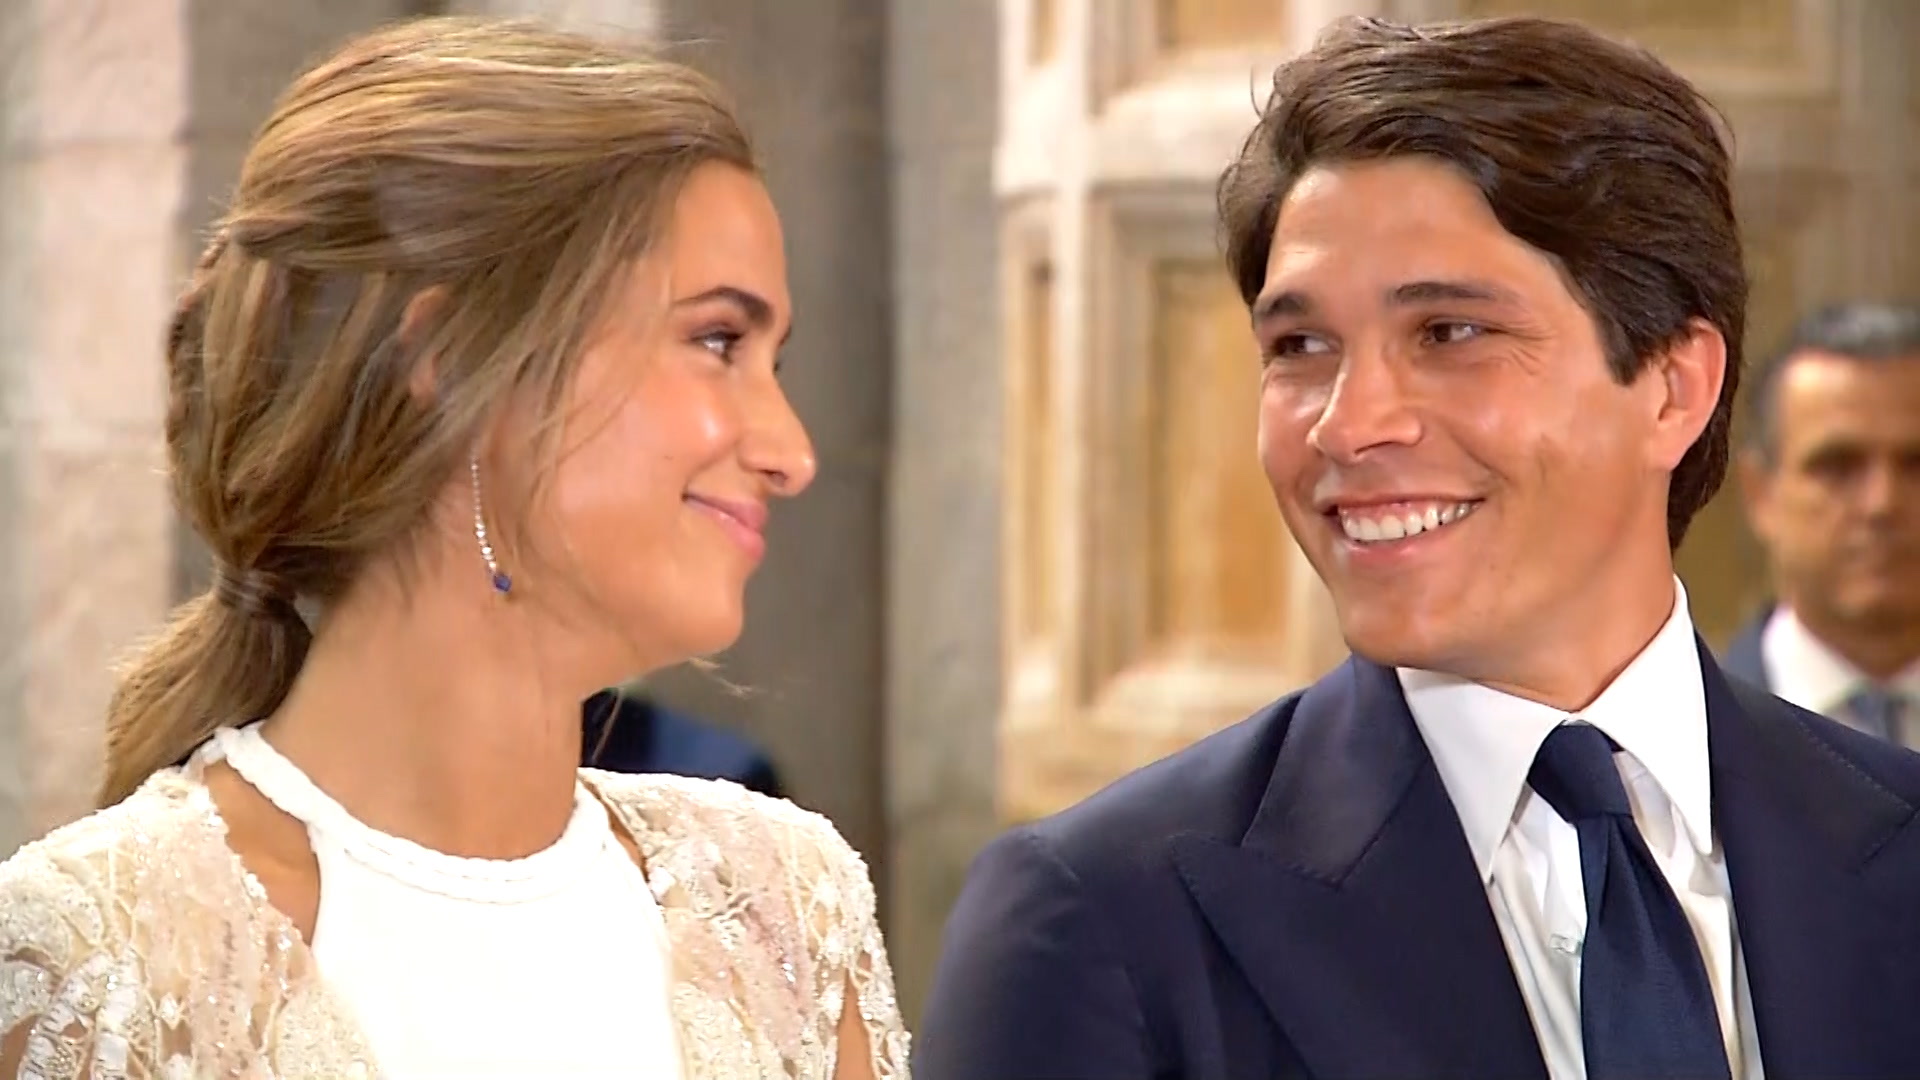 La boda de María Pombo y Pablo Castellano